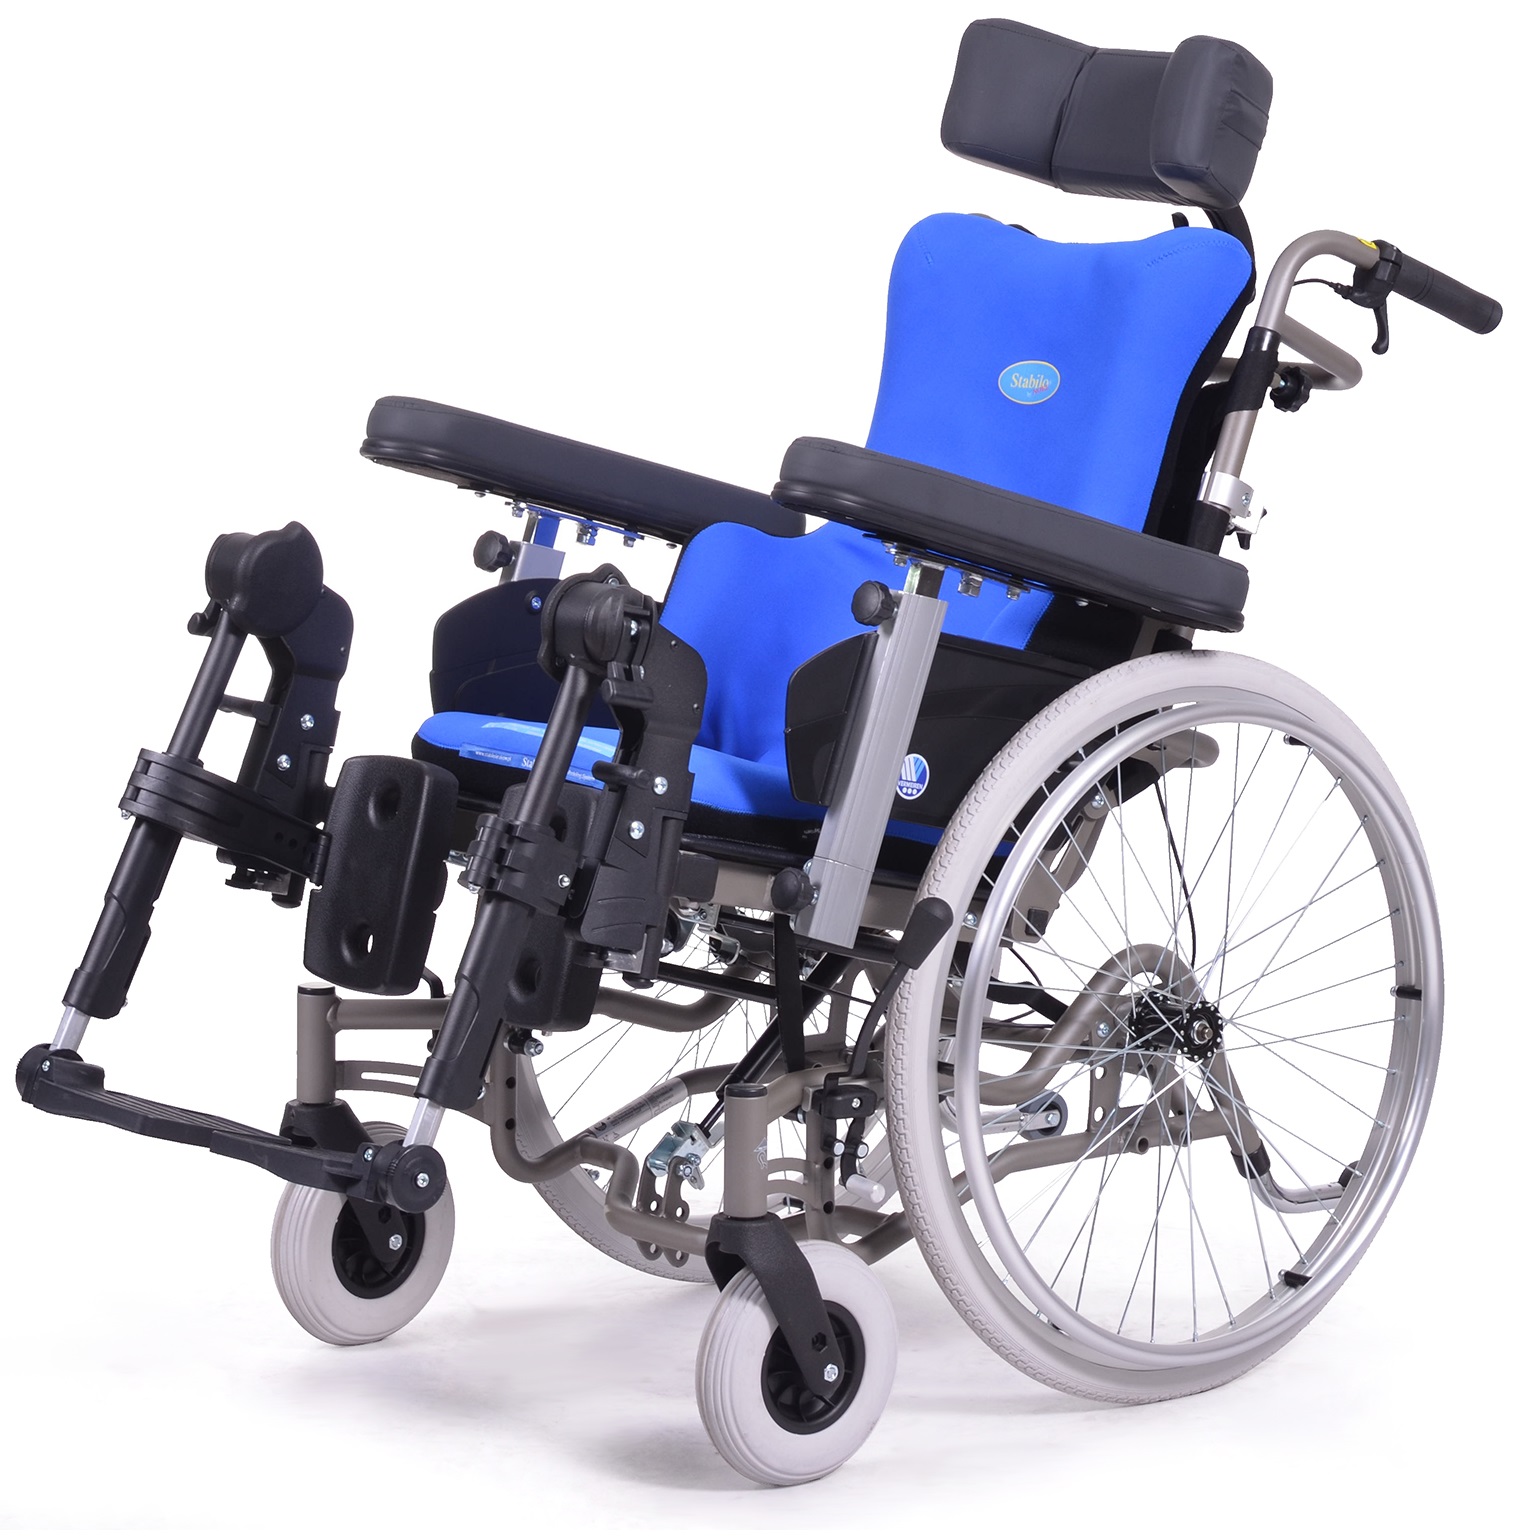 Купить сидение для инвалида. Коляска Вермейрен инвалидная. Inovys Vermeiren инвалидное кресло-коляска. Коляска инвалидная Vermeiren 9200. Inovys II Vermeiren инвалидное кресло-коляска.